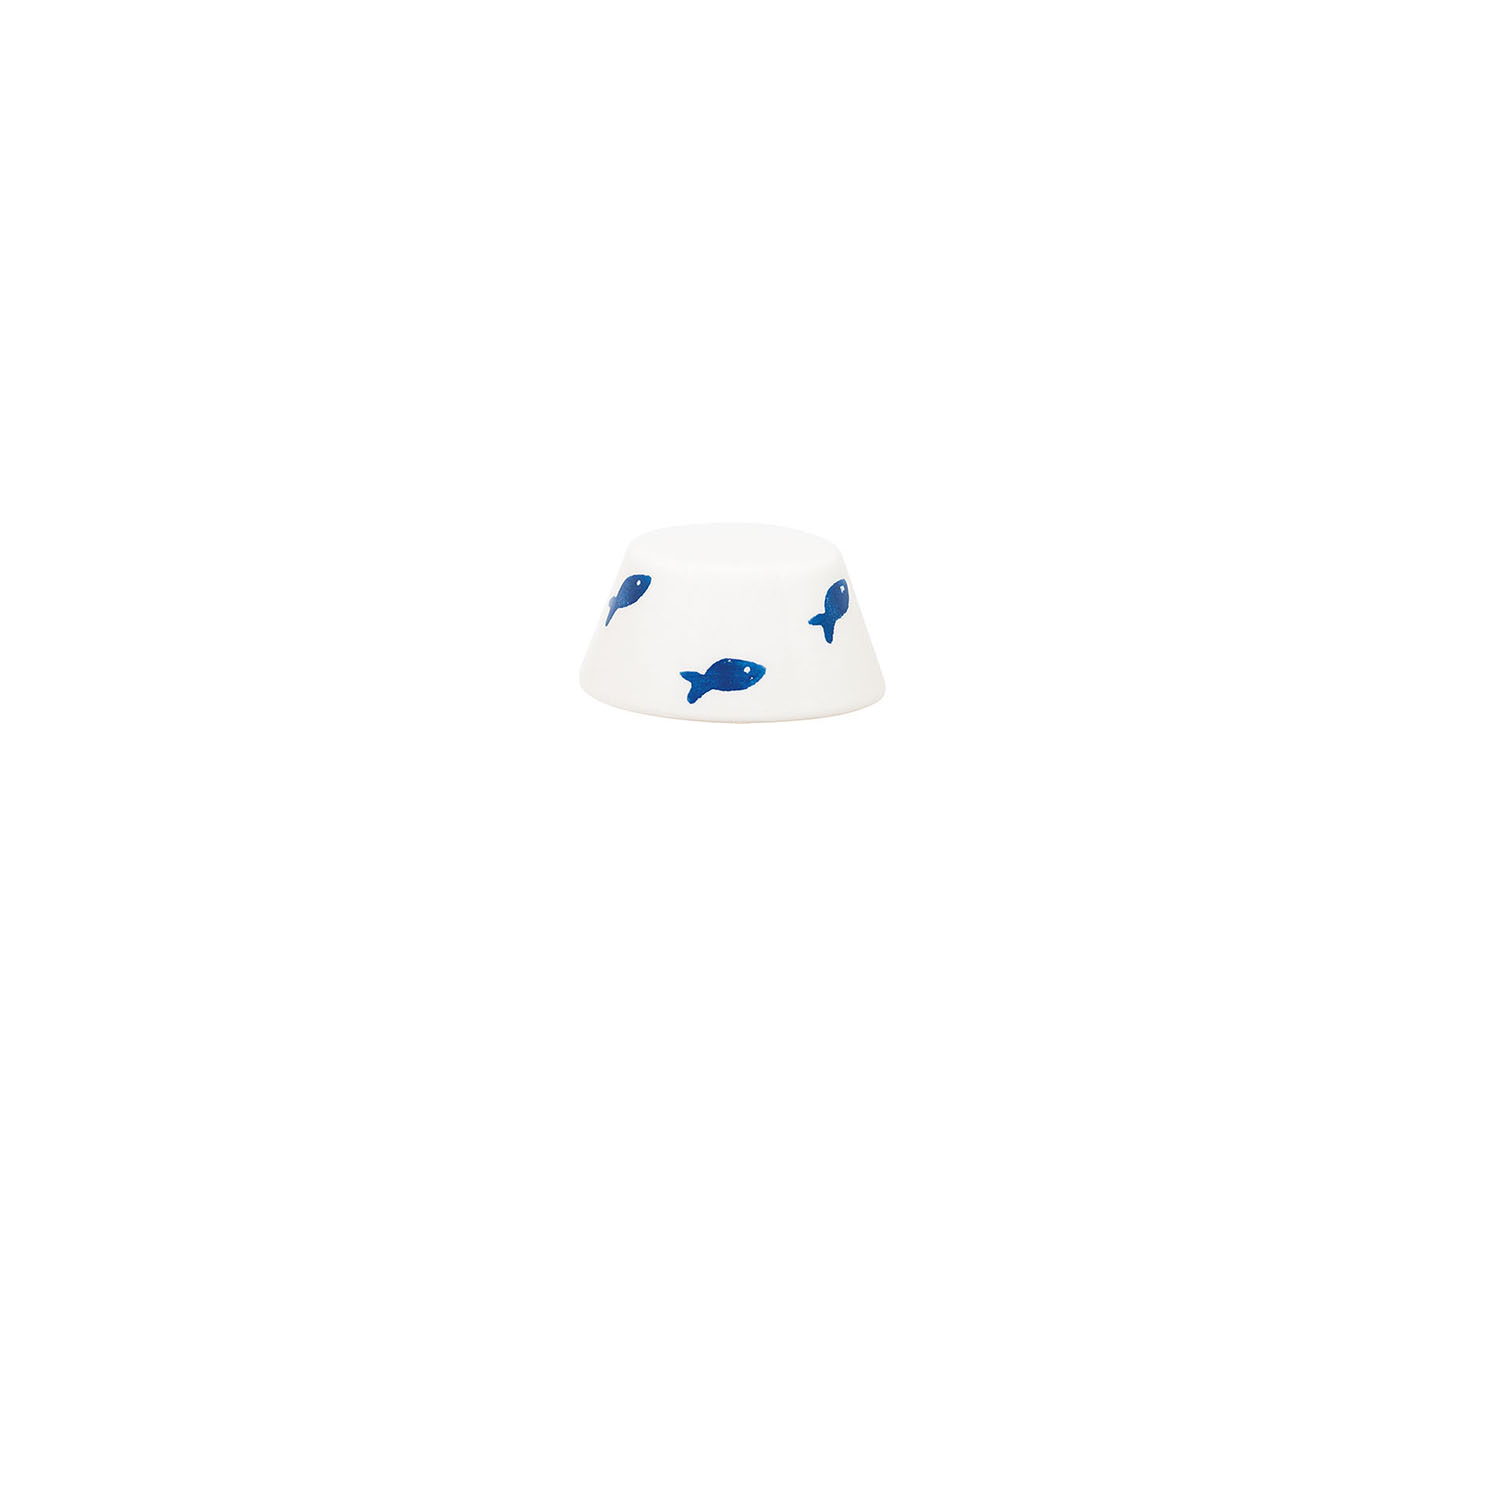 Leuchten-Schirm aus Keramik weiß mit blauen Fischen für Swap Mini Pro